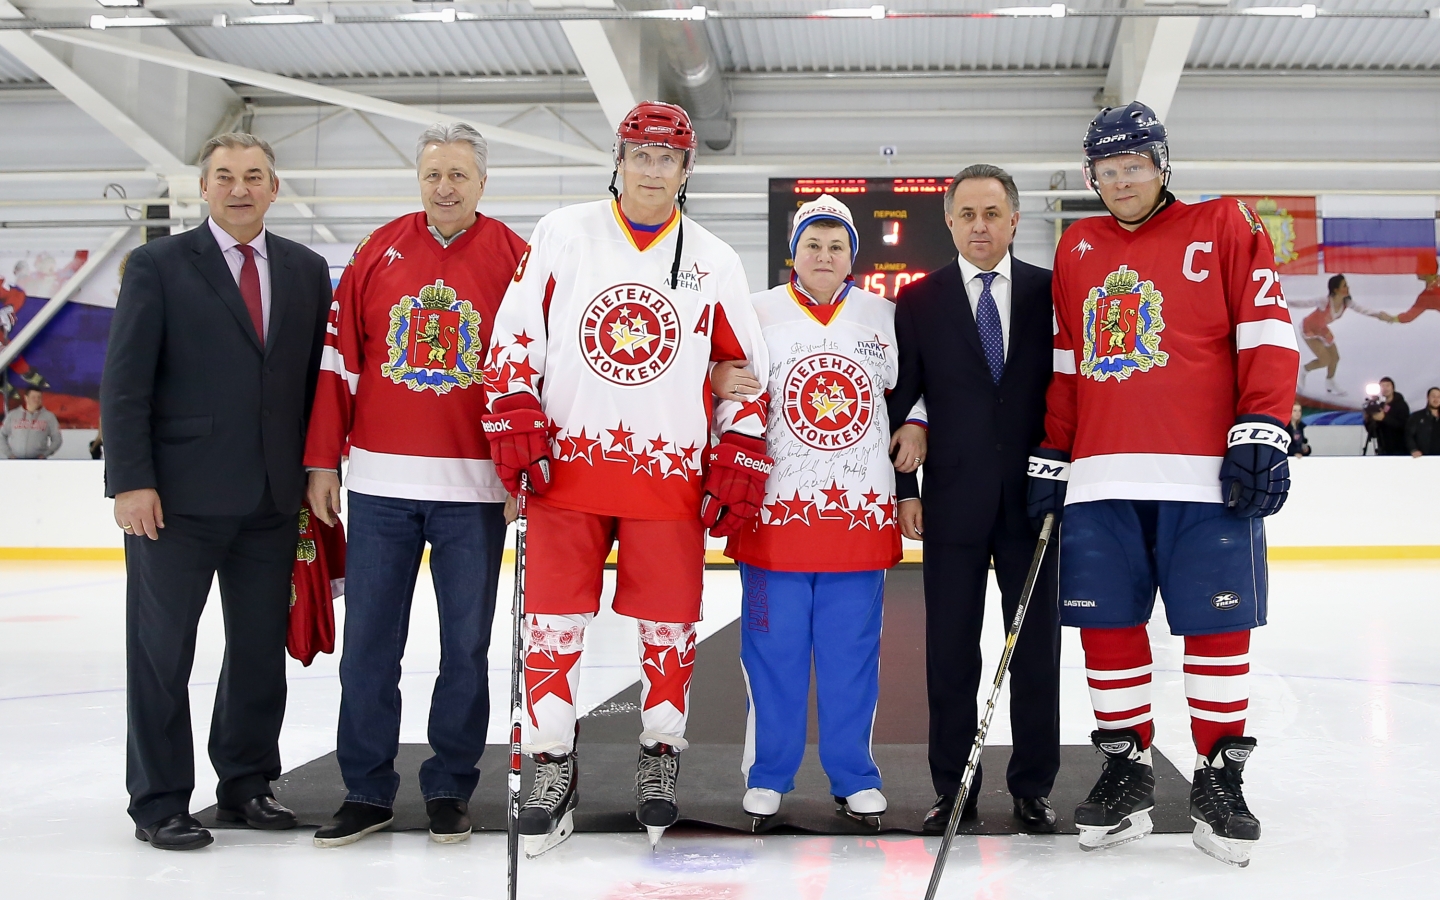  «Регионы развиваются через спорт»: Легенды Хоккея опробовали новый лед в Коврове